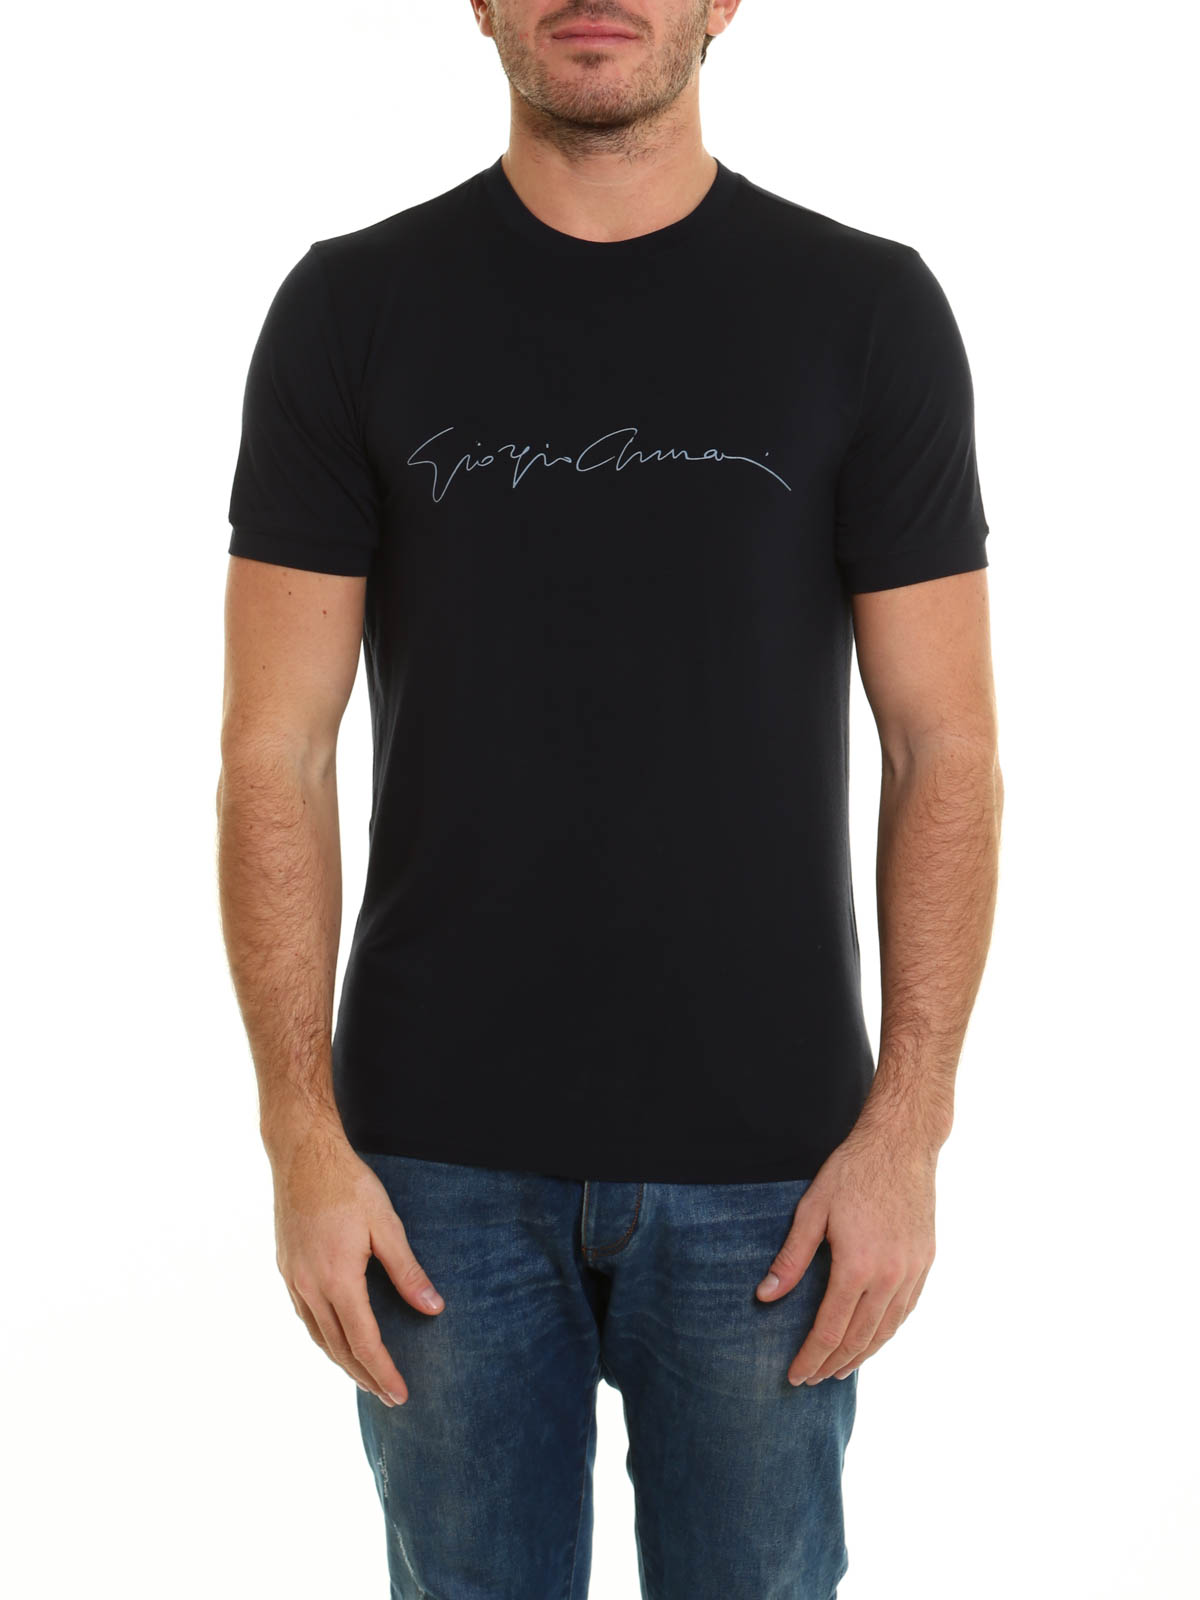 Giorgio Armani T Shirt Logo : Giorgio Armani Black Logo T Shirt Giorgio ...